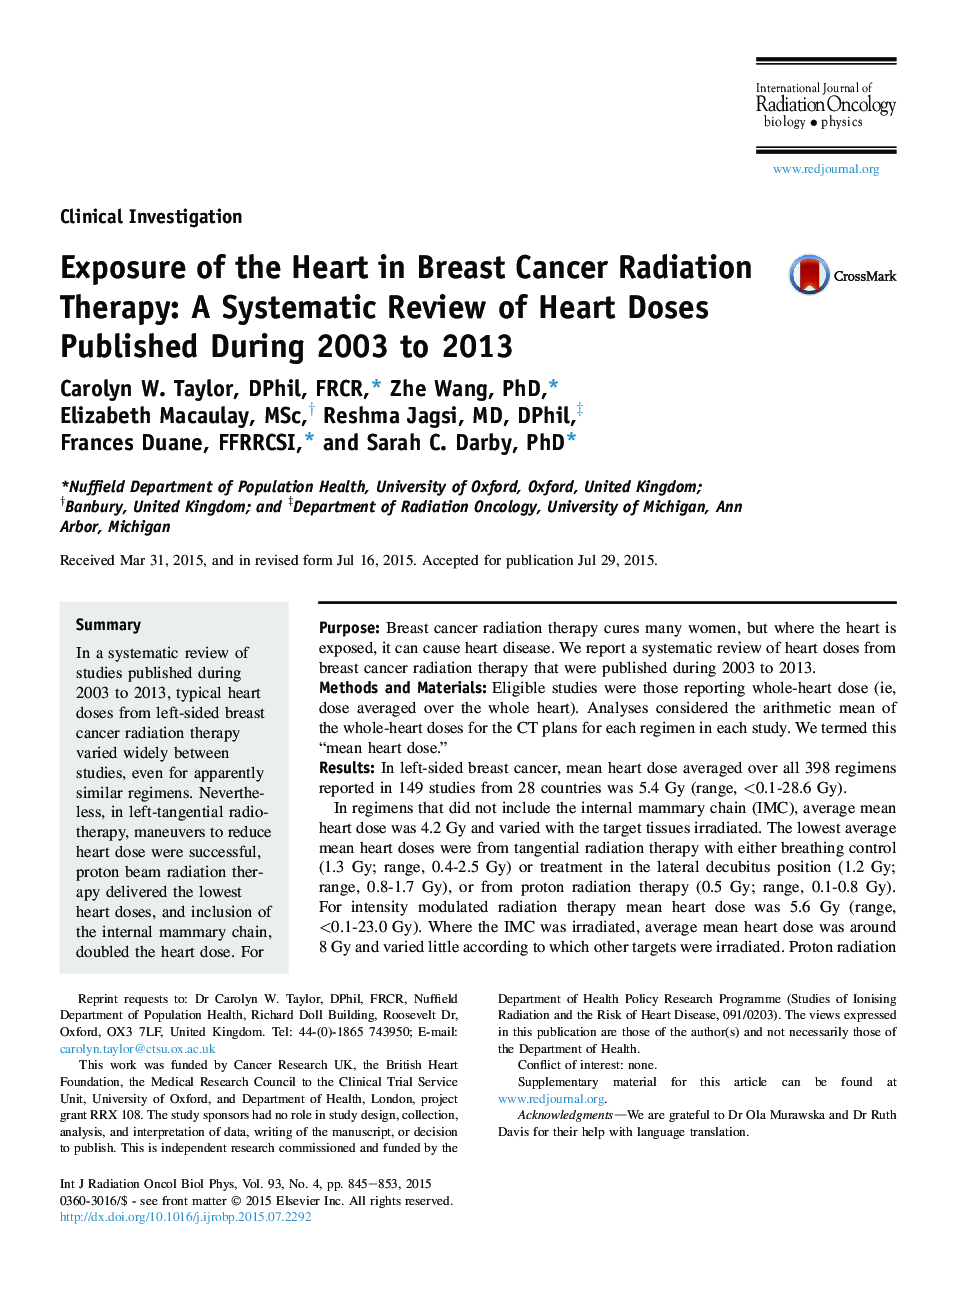 قرار گرفتن در معرض قلب در درمان سرطان پستان: یک بررسی سیستماتیک دوزهای قلب در طول سالهای 2003 تا 2013 